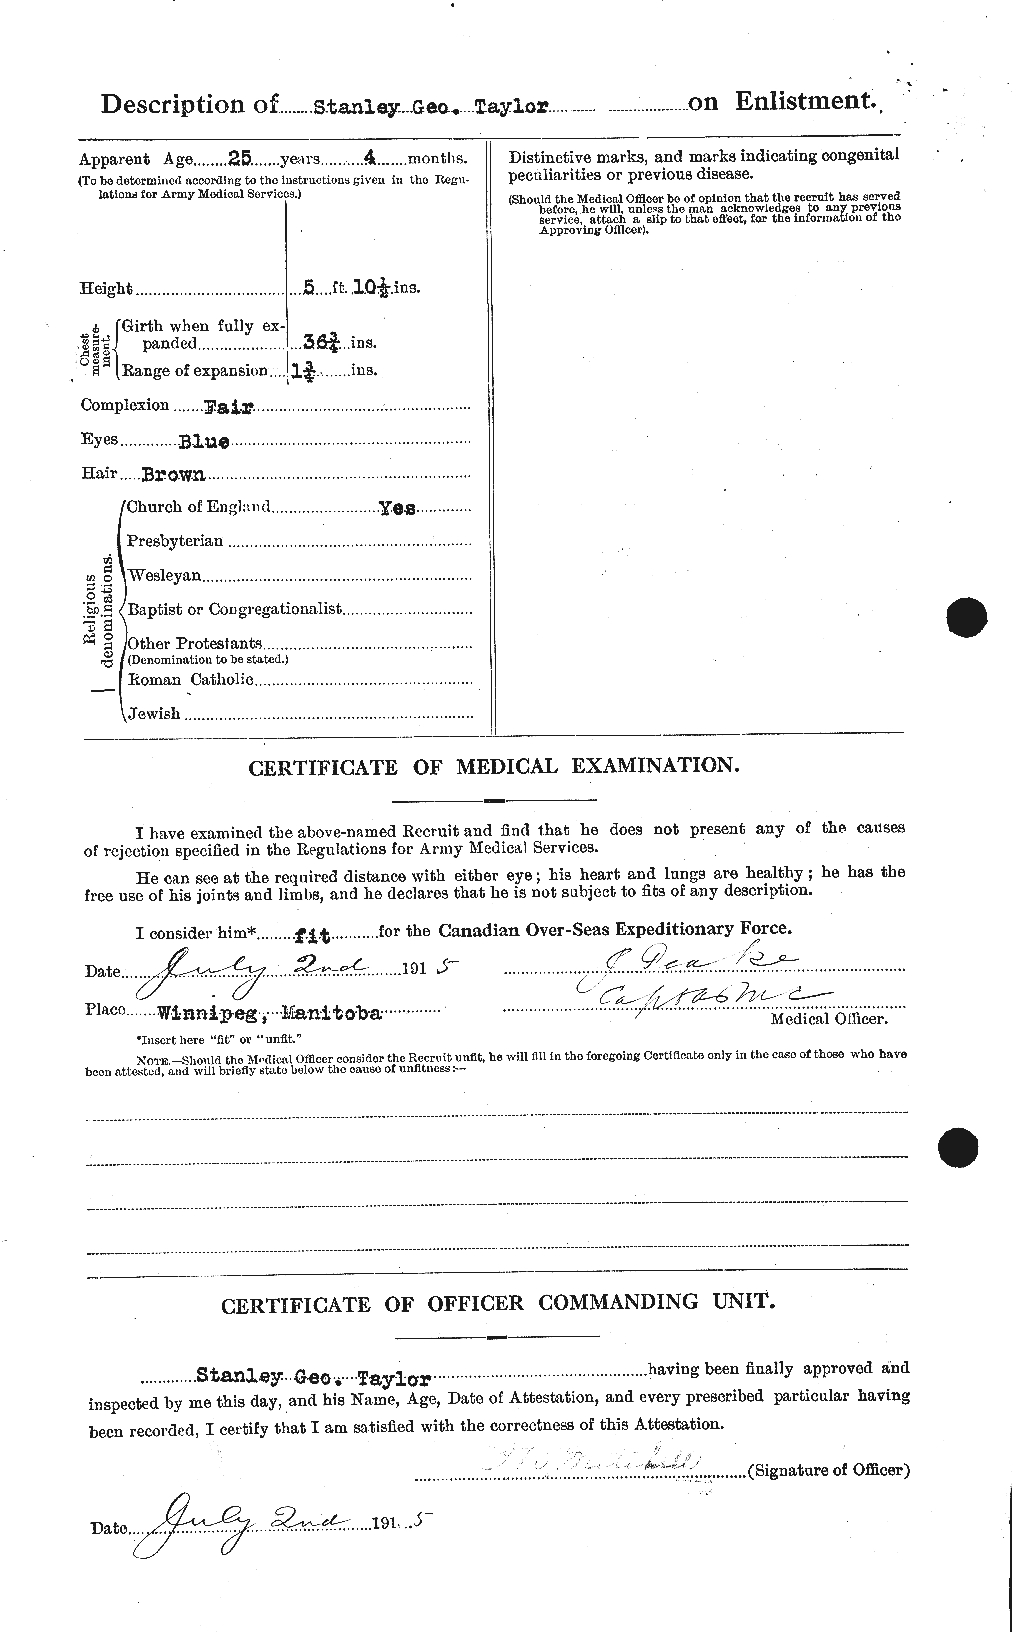 Dossiers du Personnel de la Première Guerre mondiale - CEC 627919b